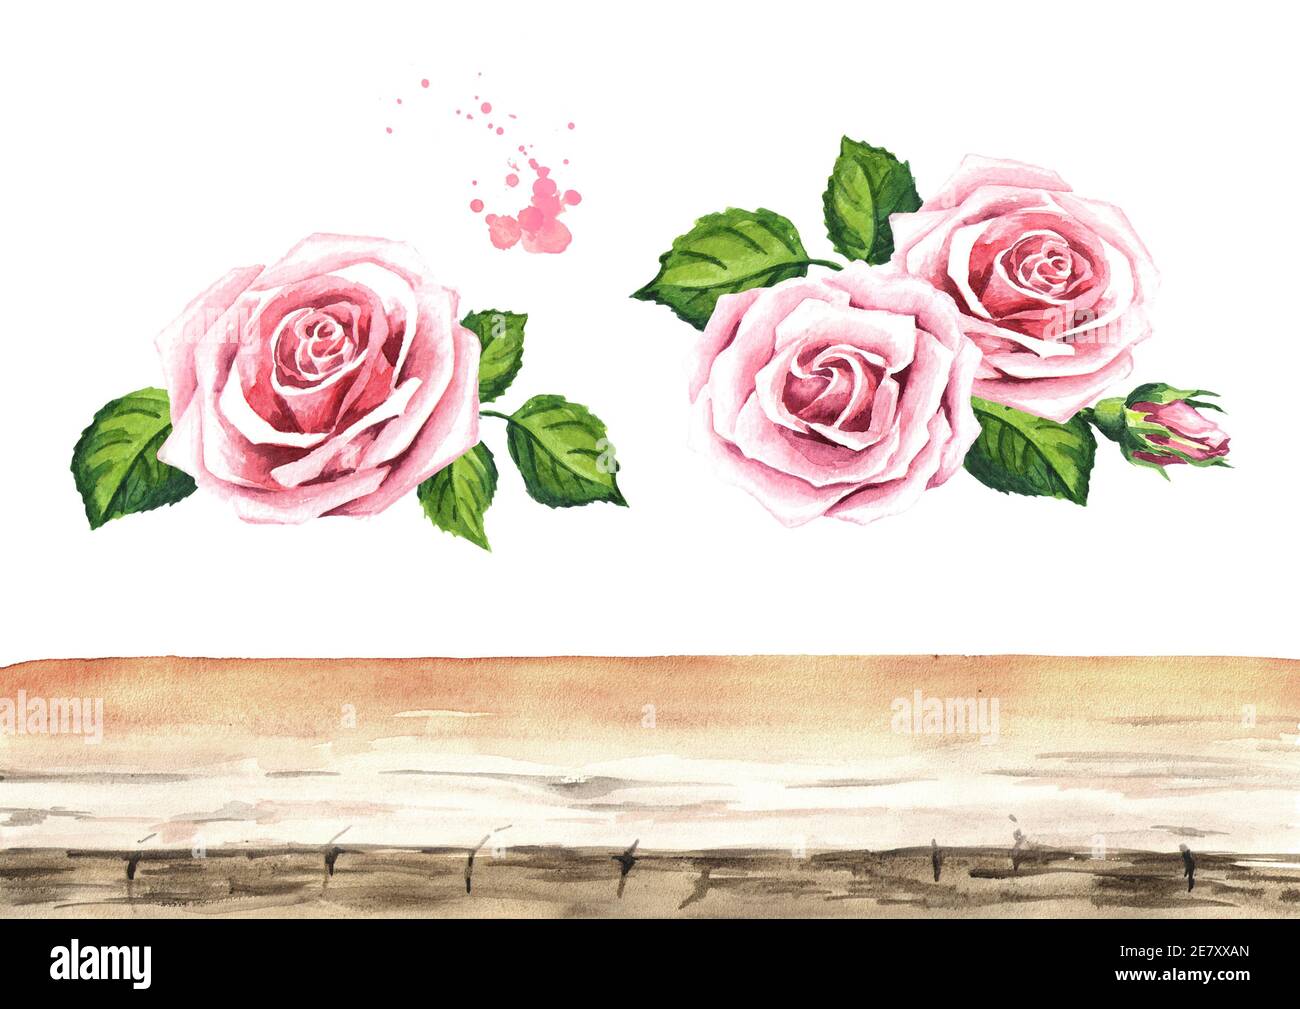 Éléments de fond rose rose fleur. Éléments de conception pour cartes, invitations et textiles. Aquarelle dessin à la main, isolée sur fond blanc Banque D'Images